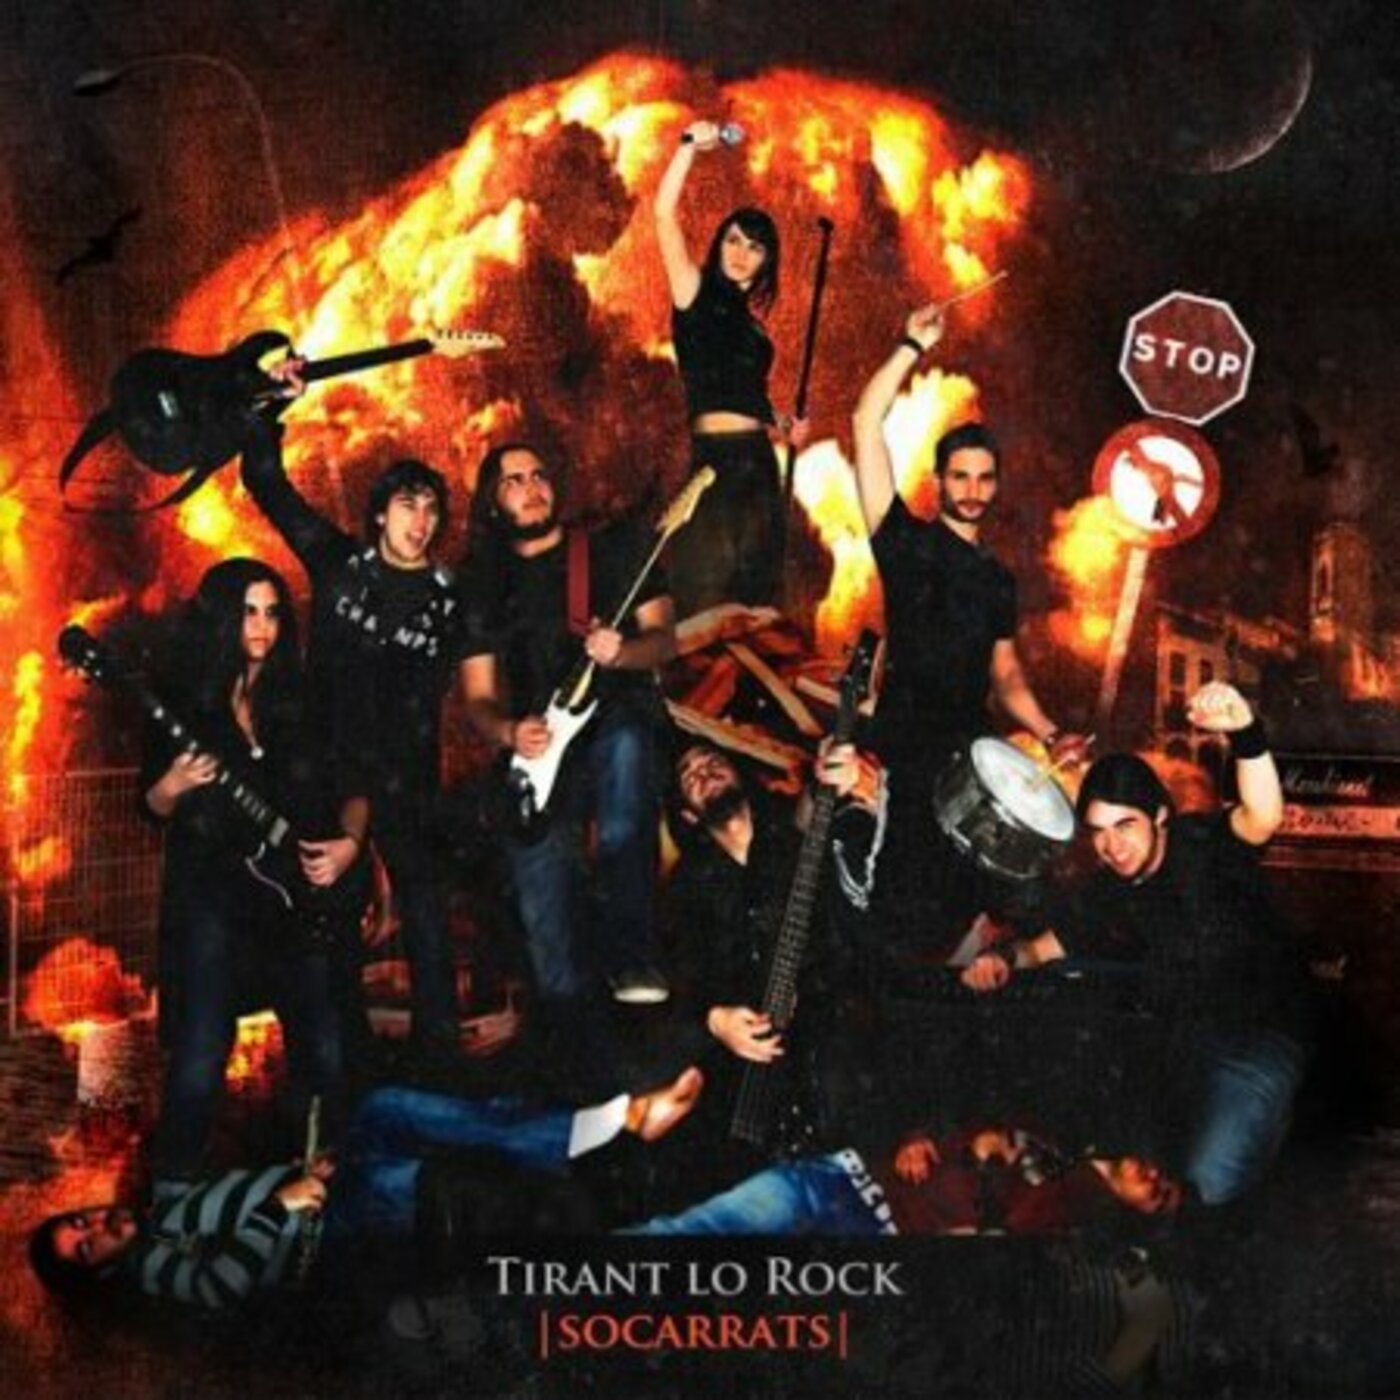 Tirant lo Rock - Socarrats | musica en valencià